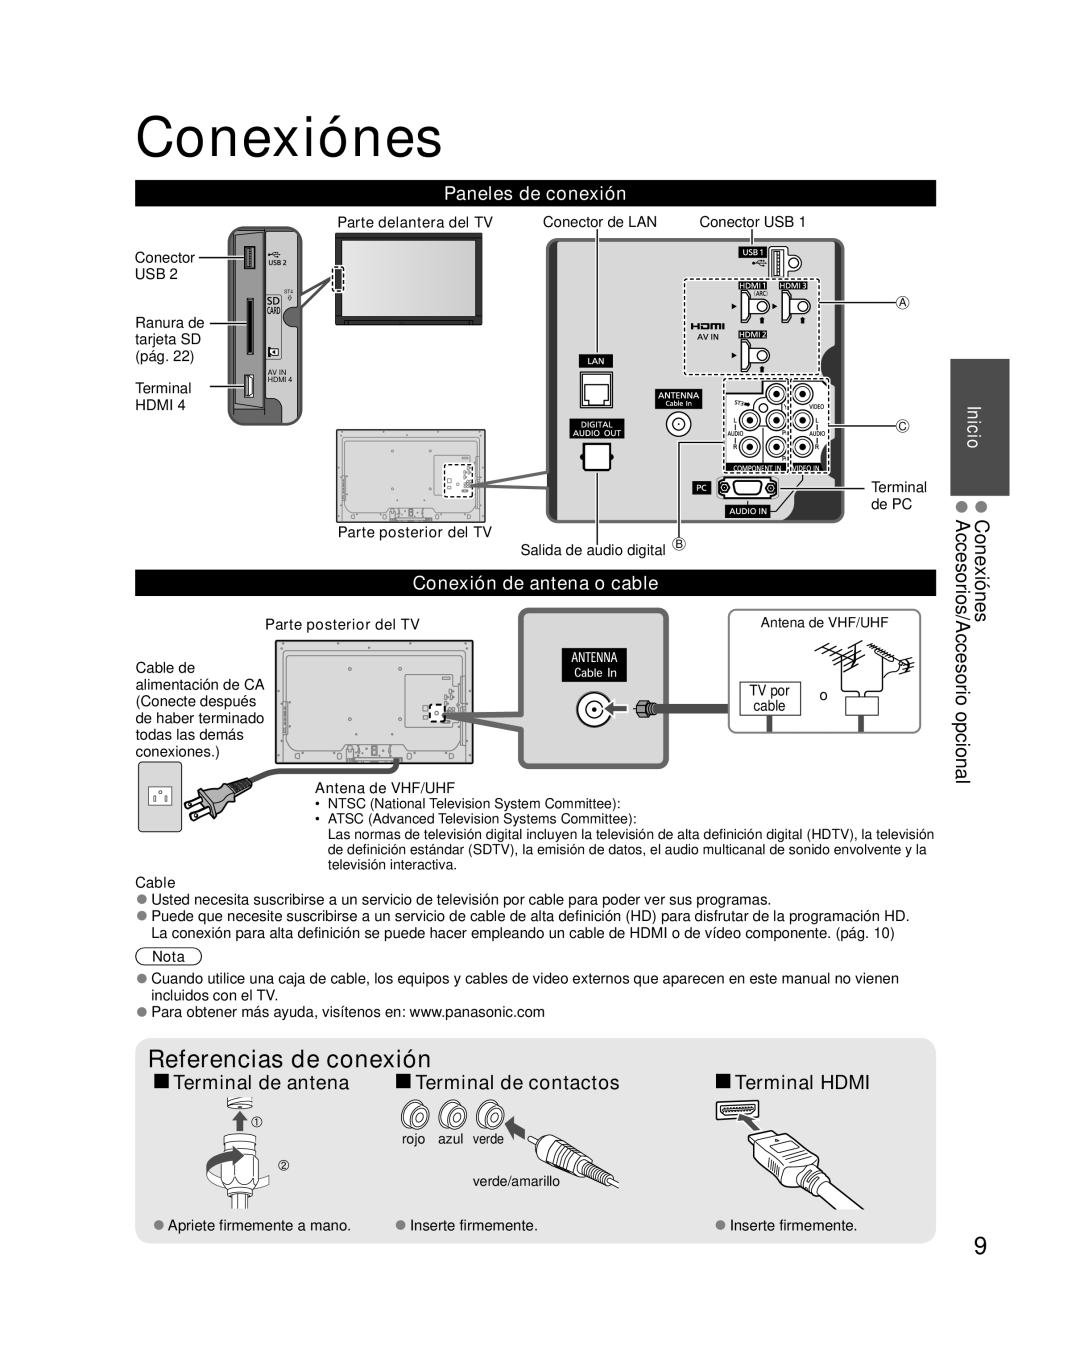 Panasonic TC-L37E3 Conexiónes, Referencias de conexión, Terminal de antena, Terminal de contactos, Paneles de conexión 